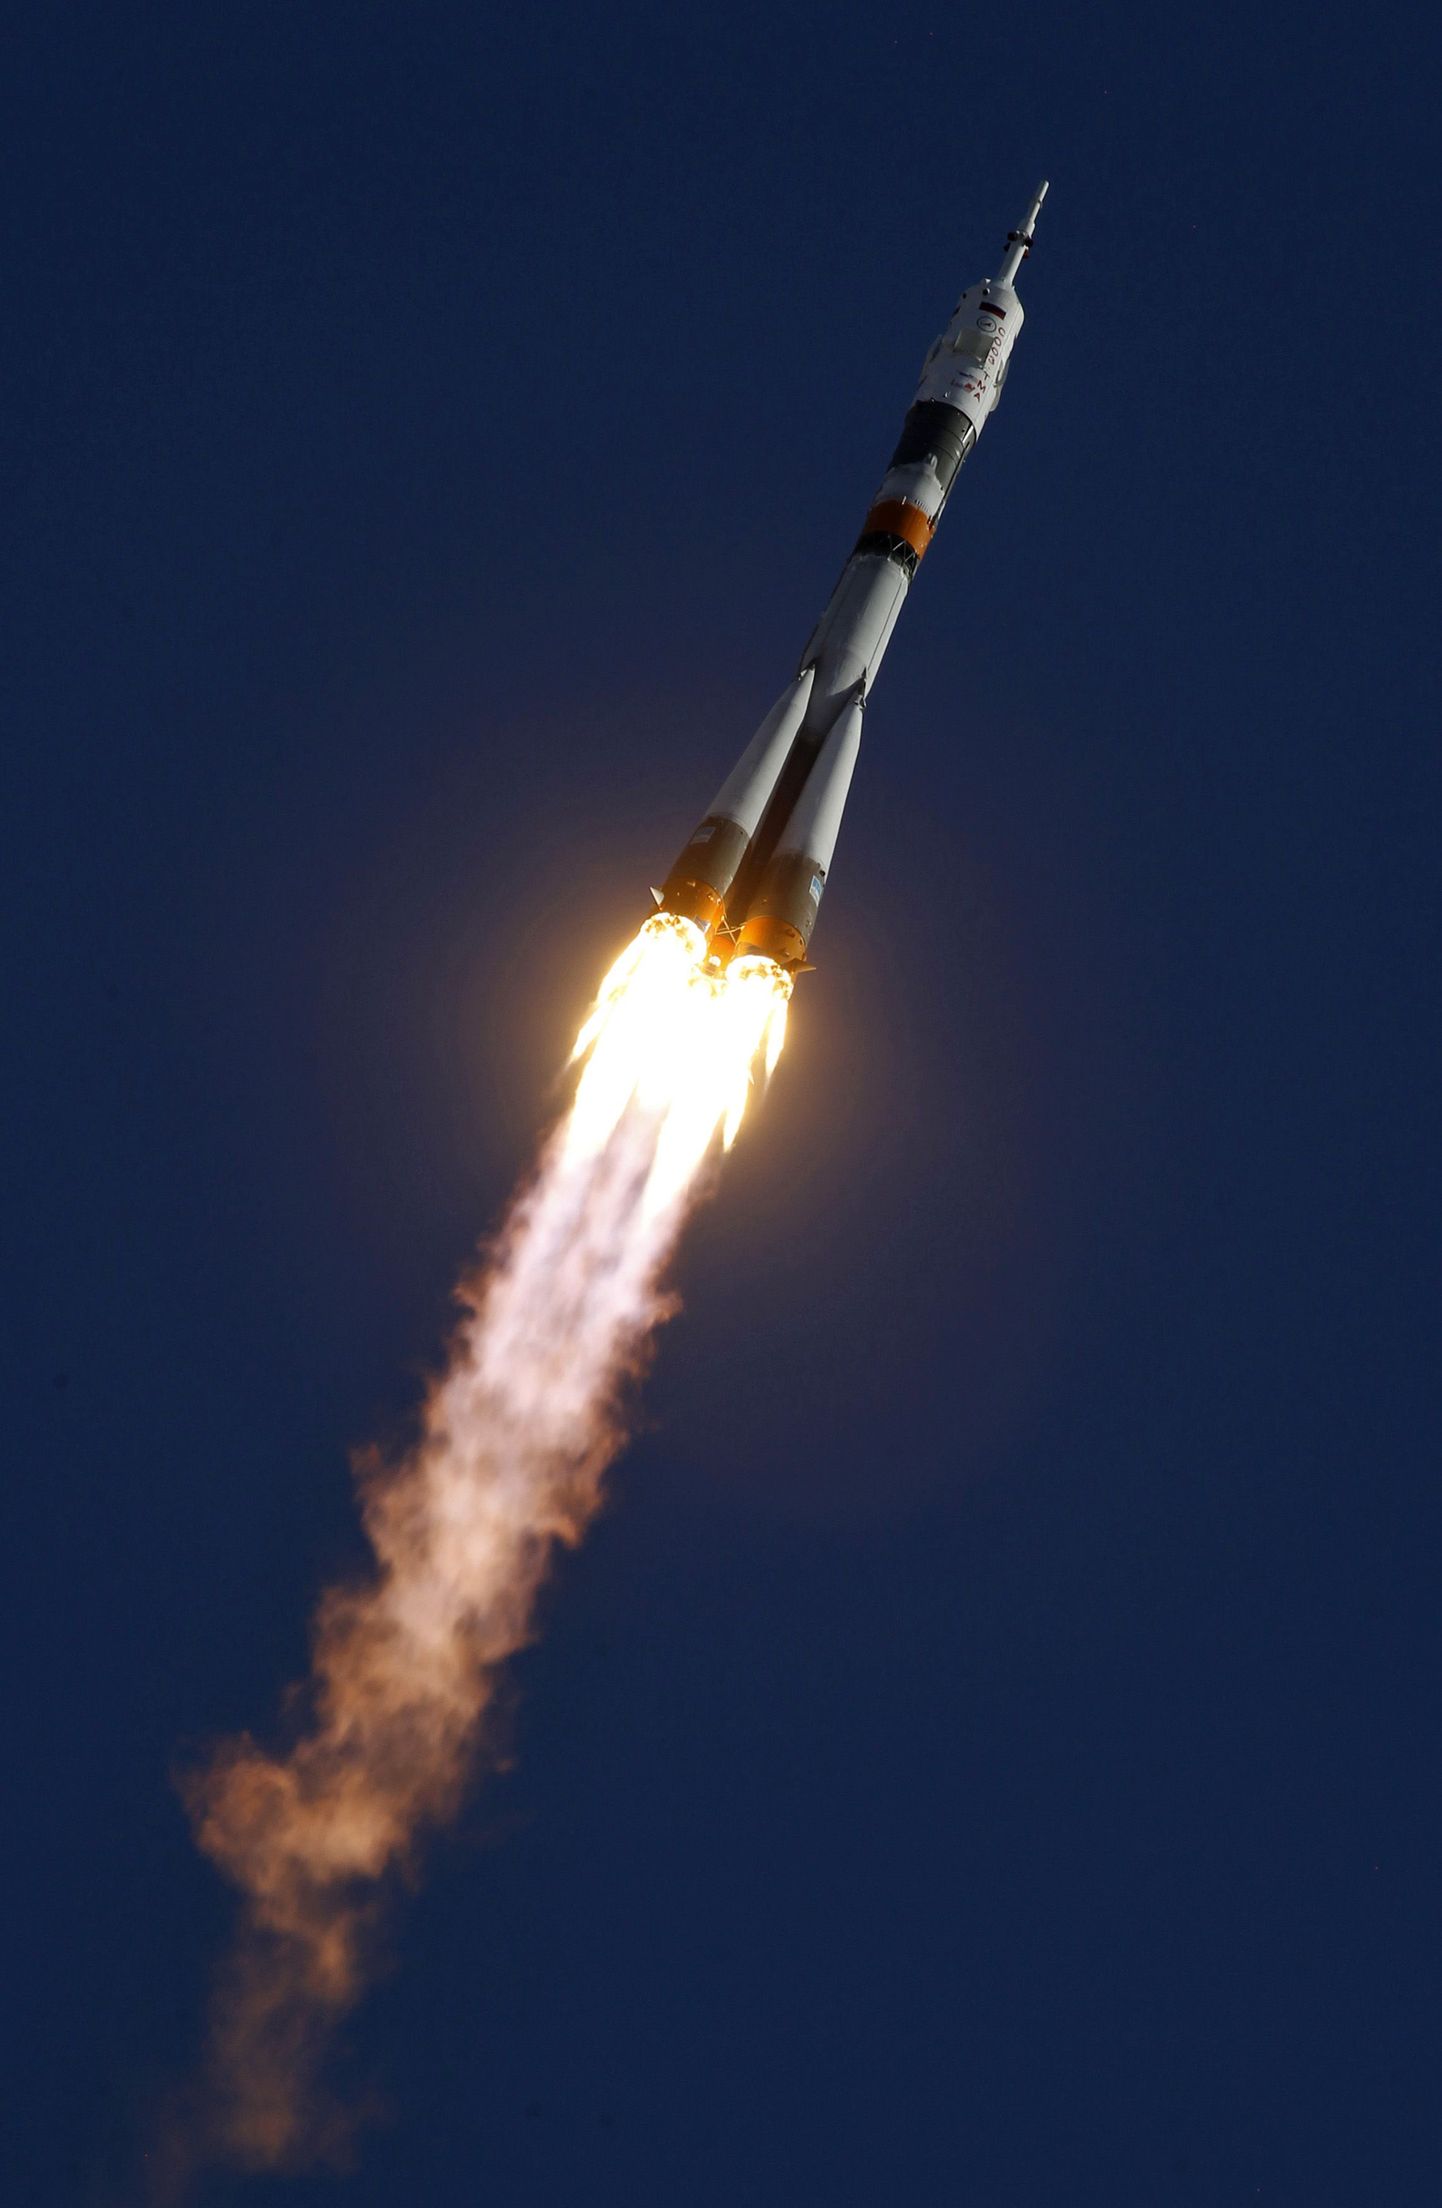 2 апреля с Байконура стартовал ракетоноситель "Союз" с американской астронавткой и российскими космонавтами на борту